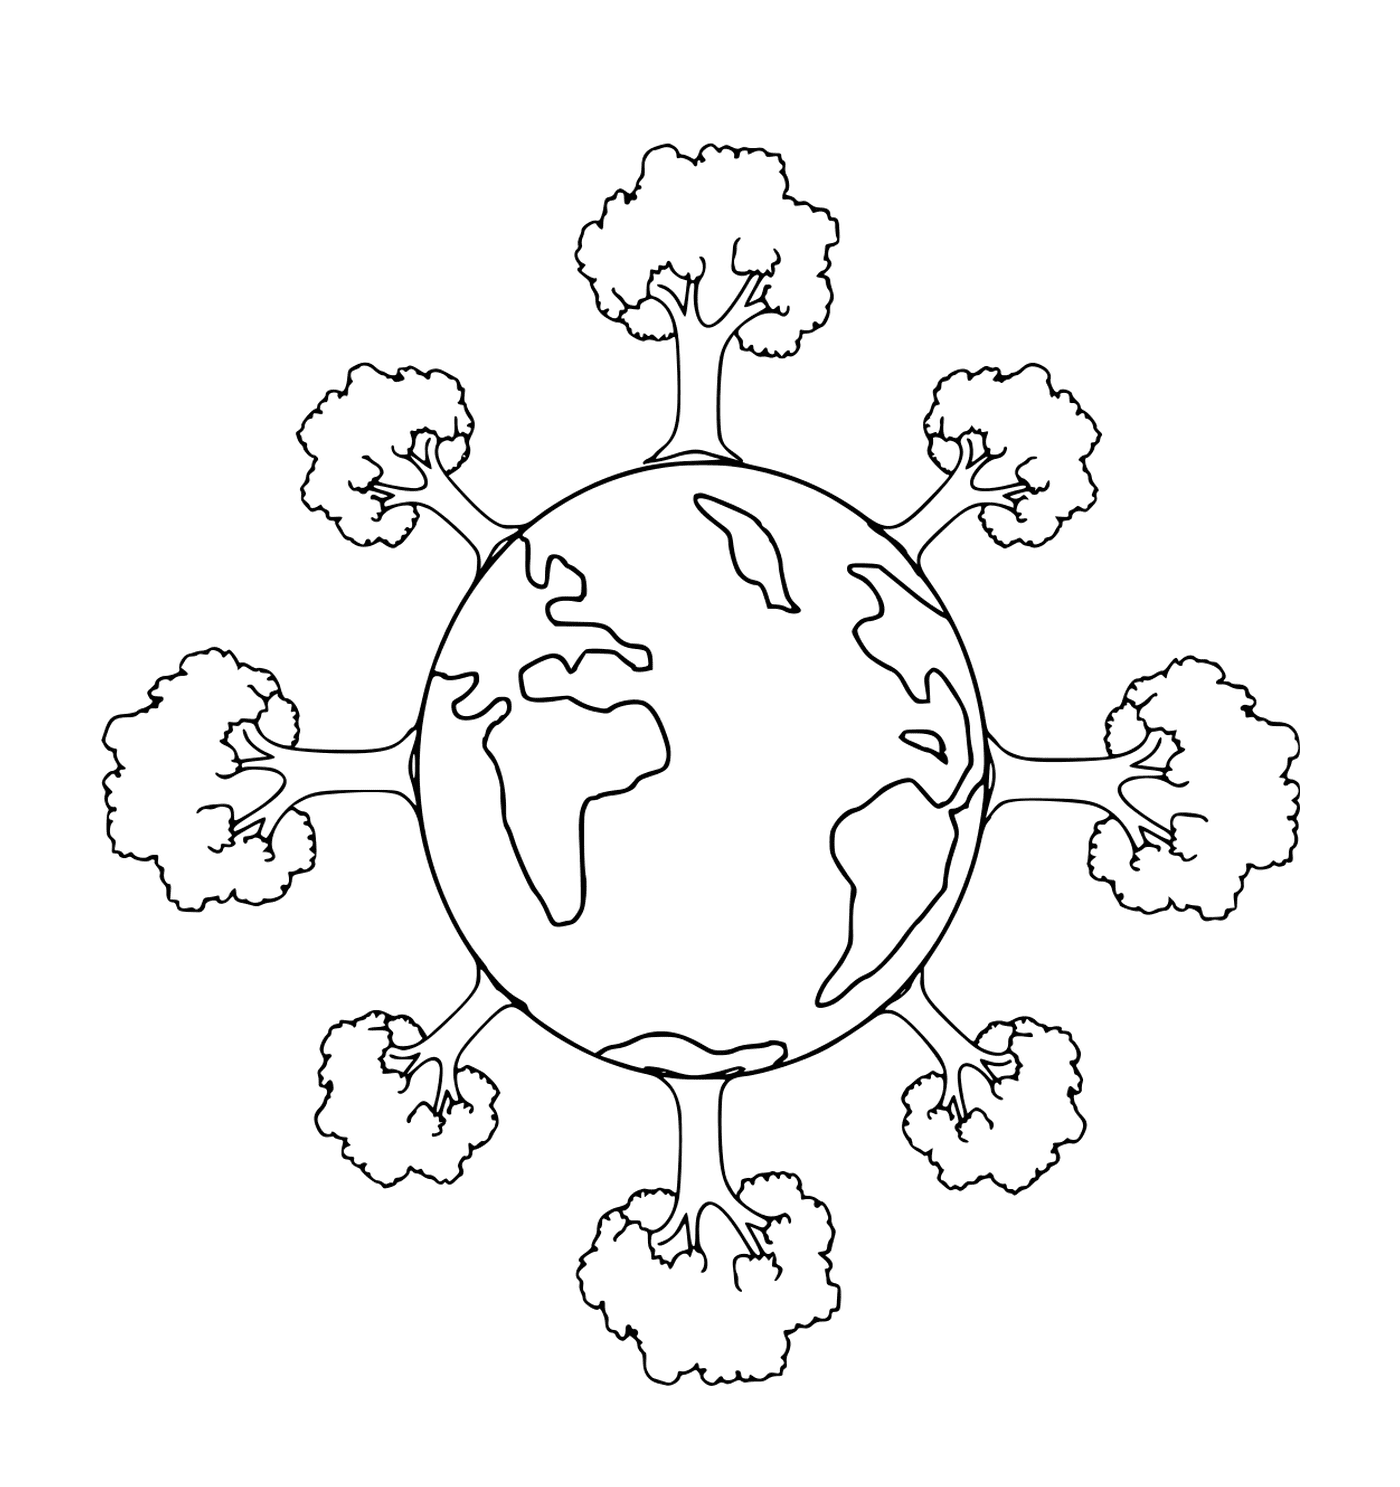  День Земли: планета, окруженная деревьями 